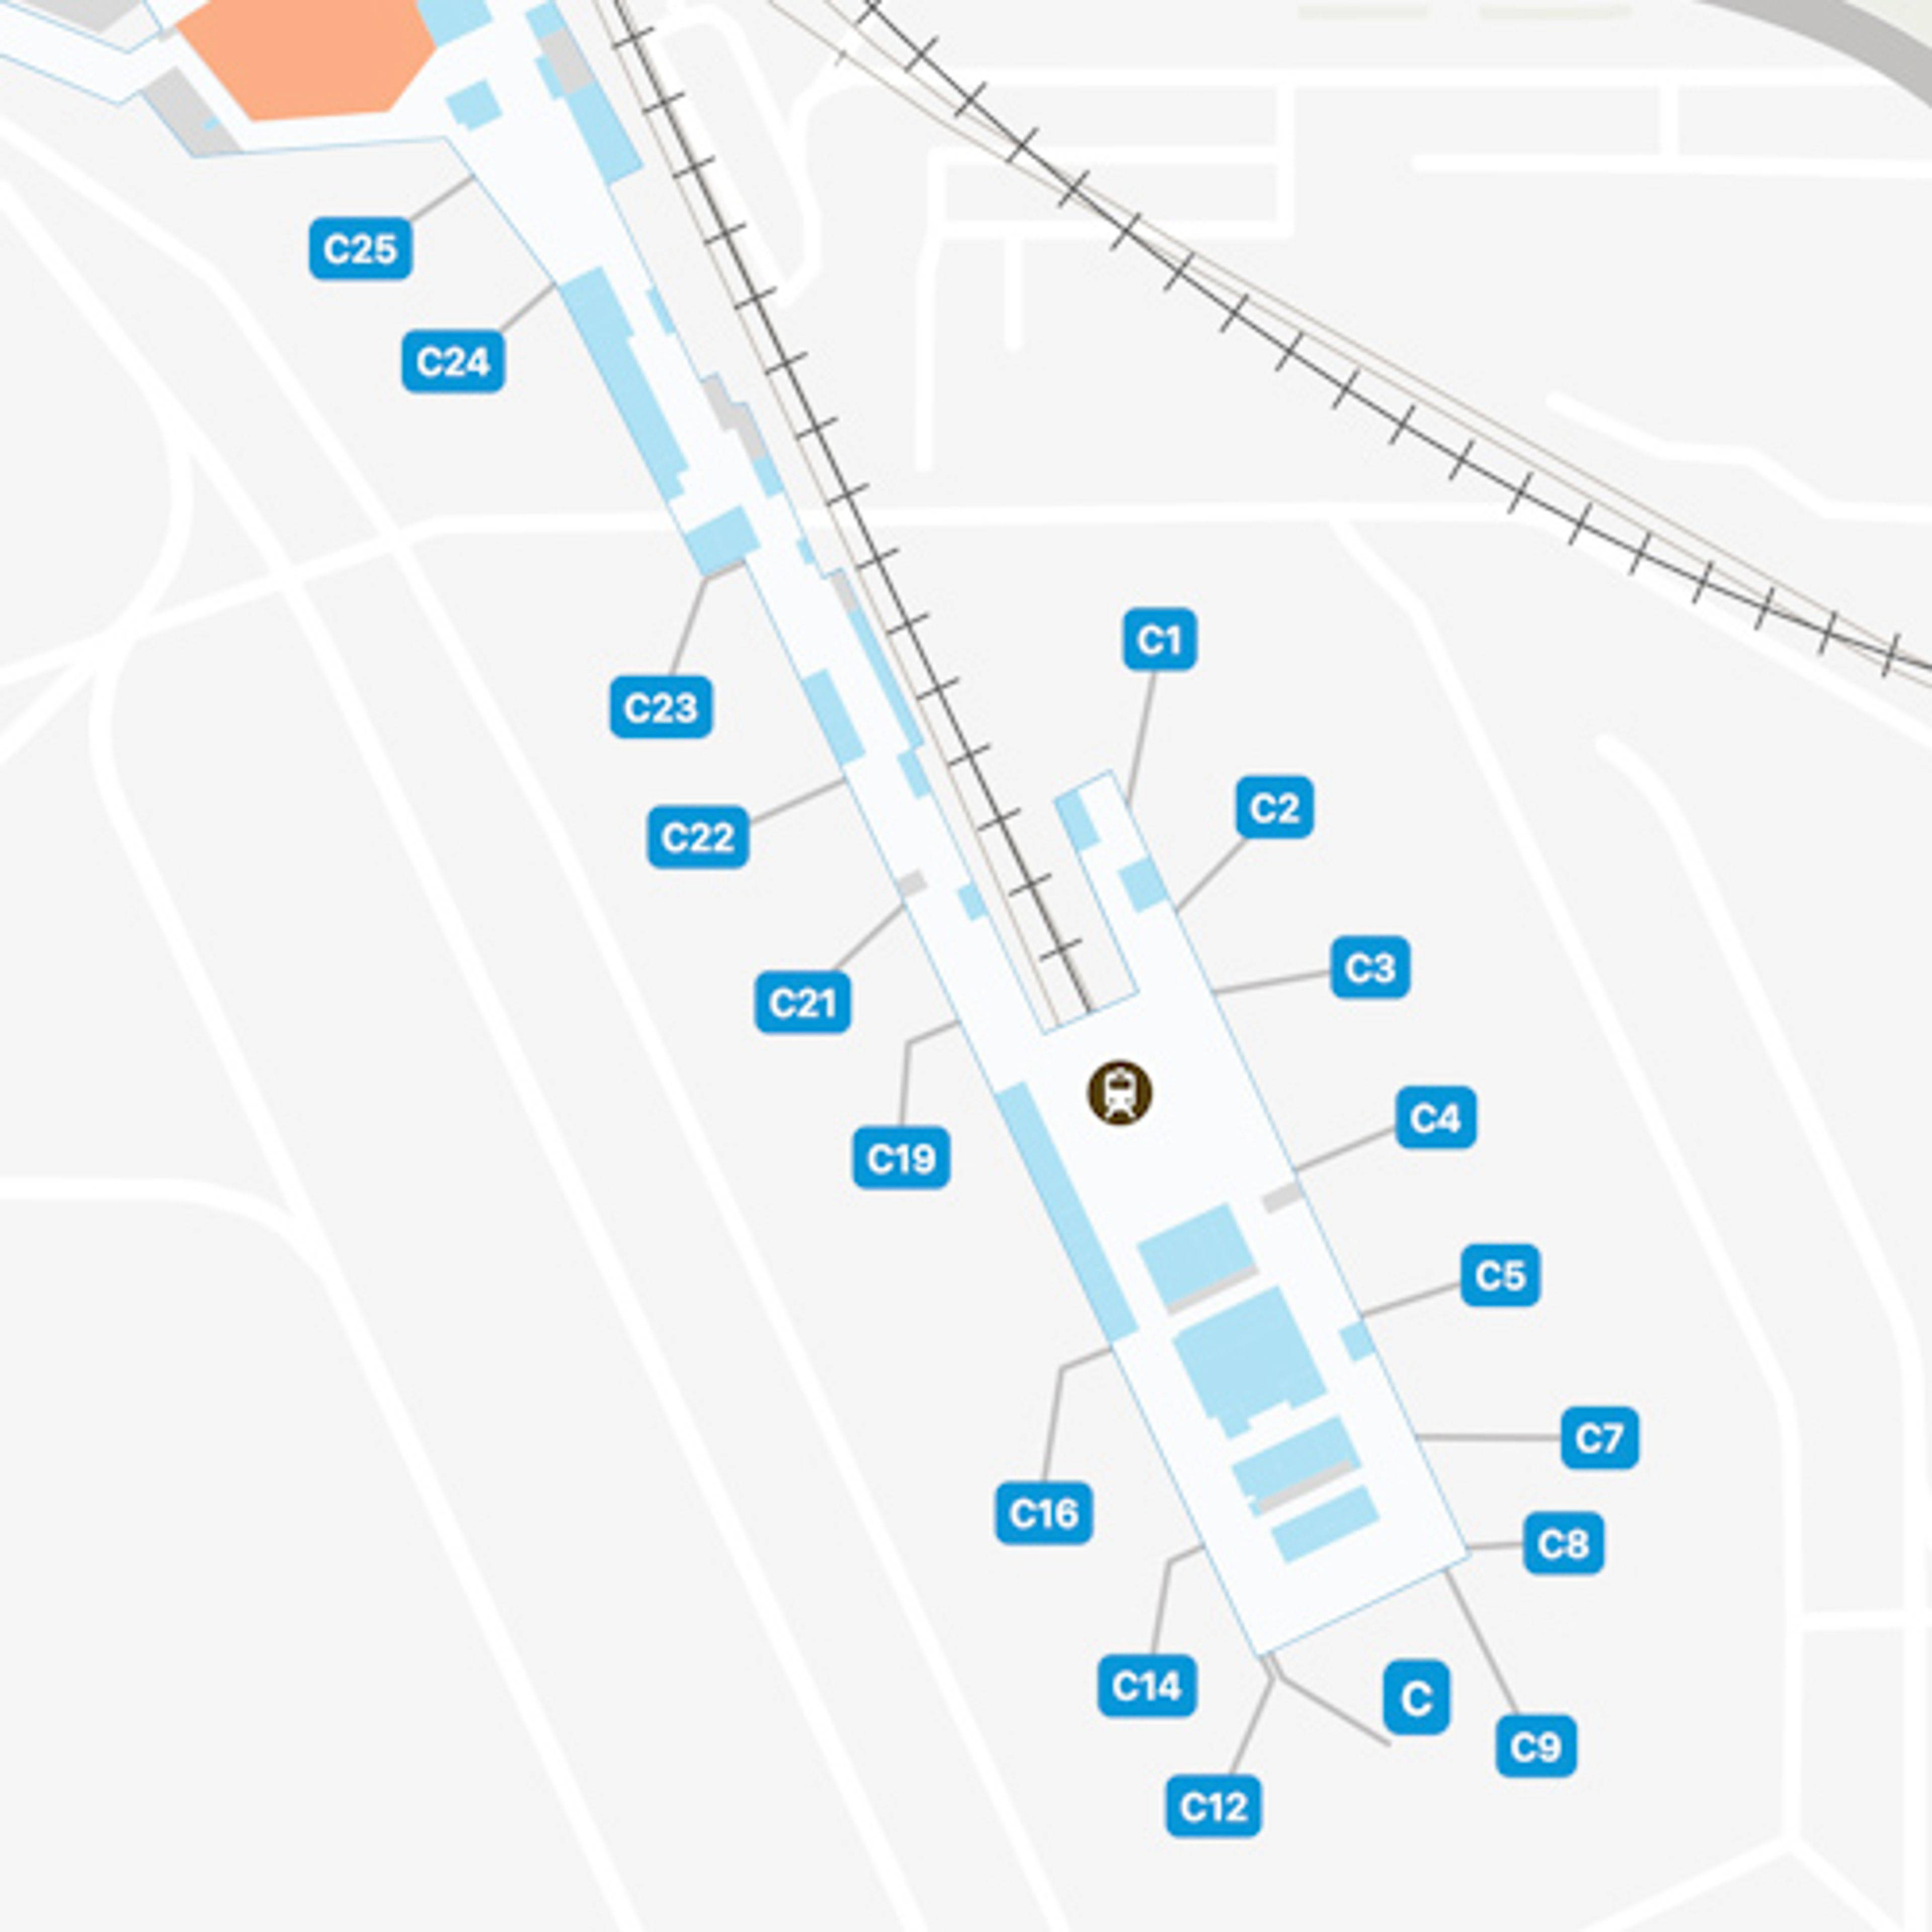 LAS Concourse C Map